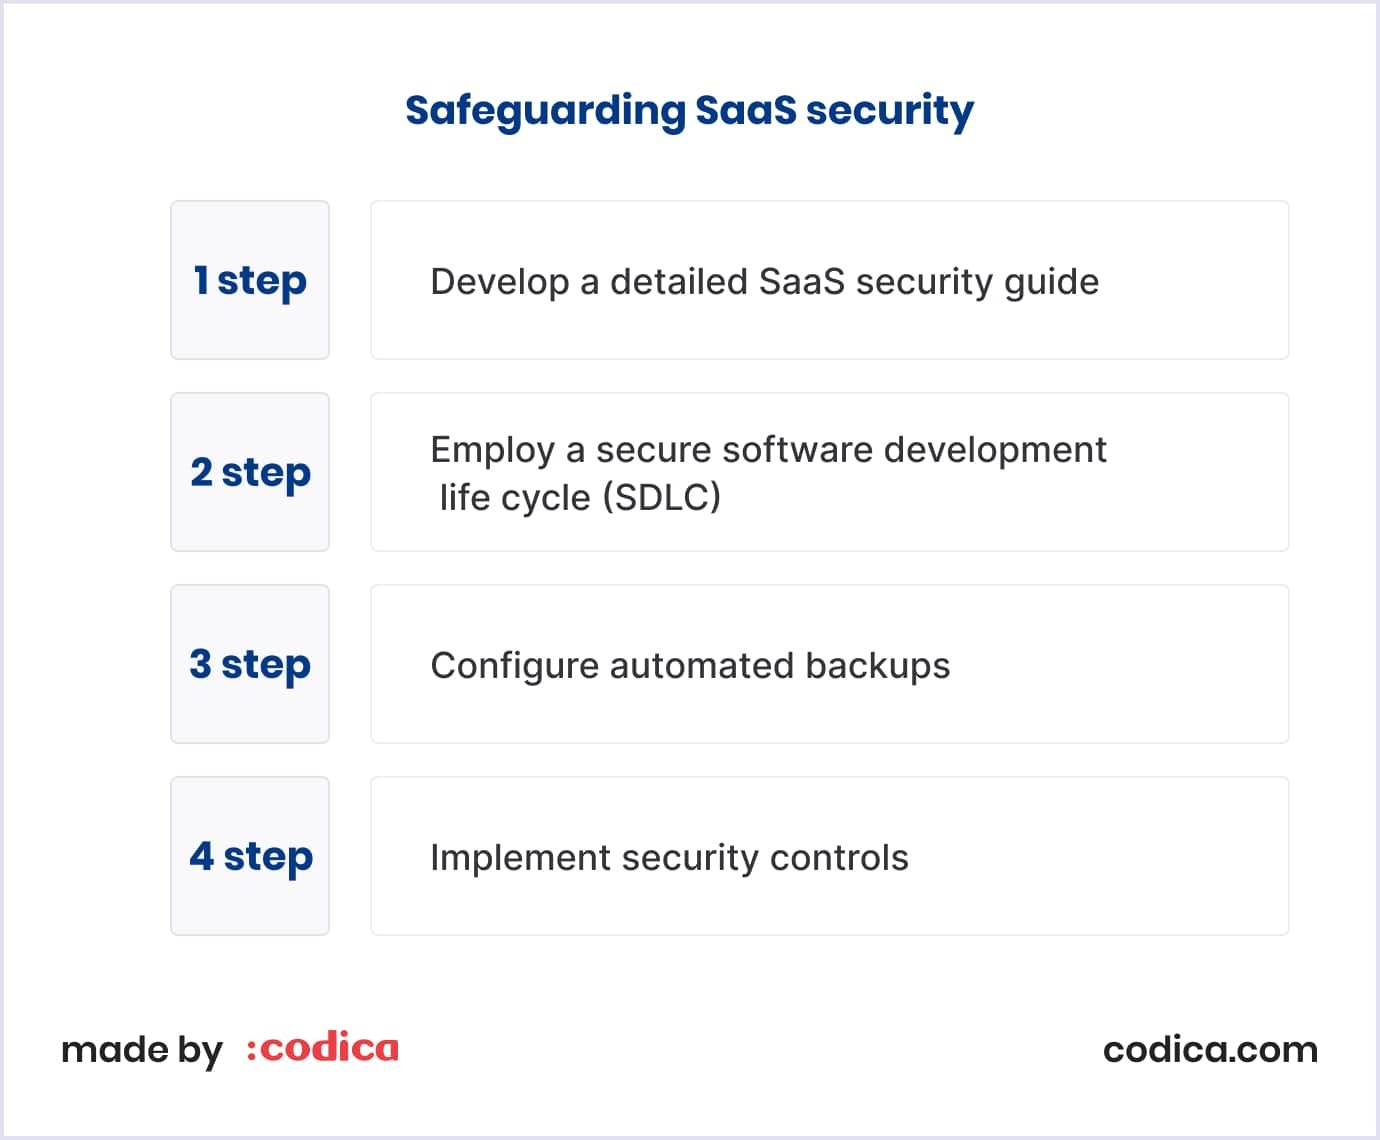 Steps of SaaS security